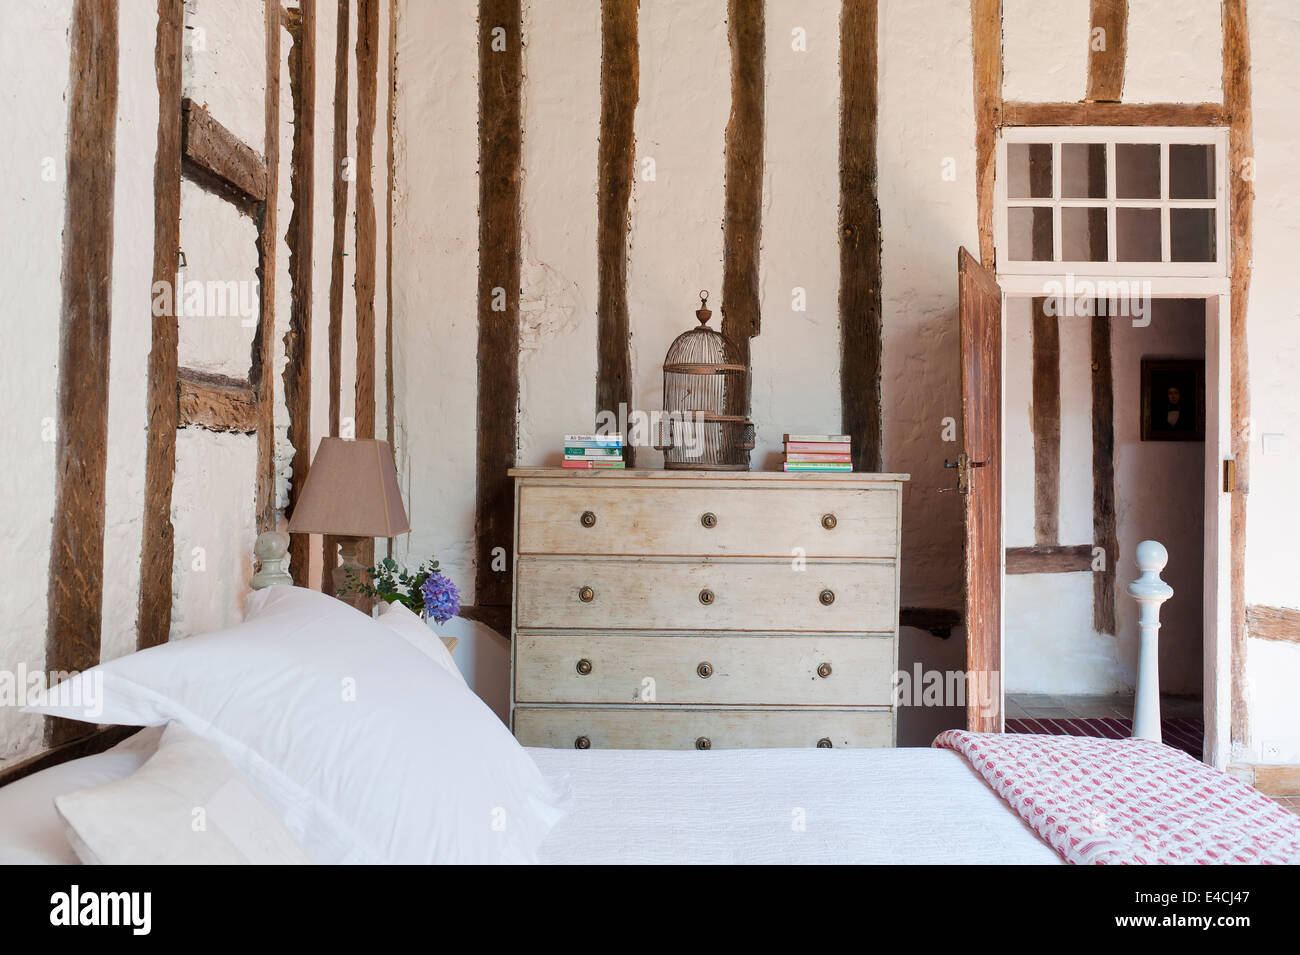 Fachwerk Wände mit gerenderten Füllung im Schlafzimmer mit Kommode und alten Vogelkäfig Stockfoto